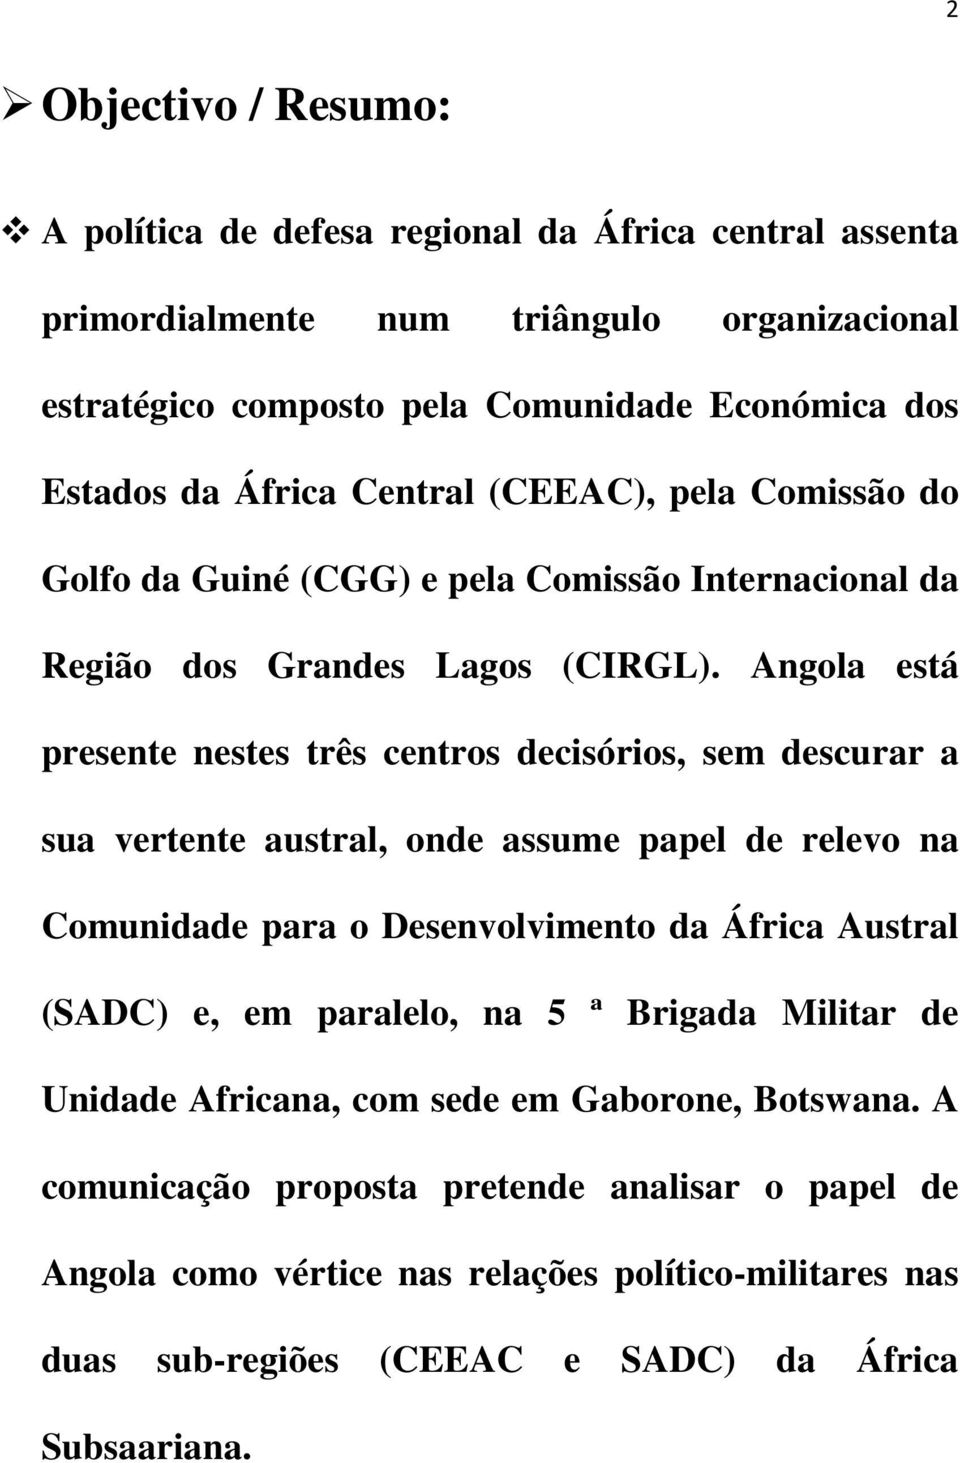 Angola está presente nestes três centros decisórios, sem descurar a sua vertente austral, onde assume papel de relevo na Comunidade para o Desenvolvimento da África Austral (SADC) e, em